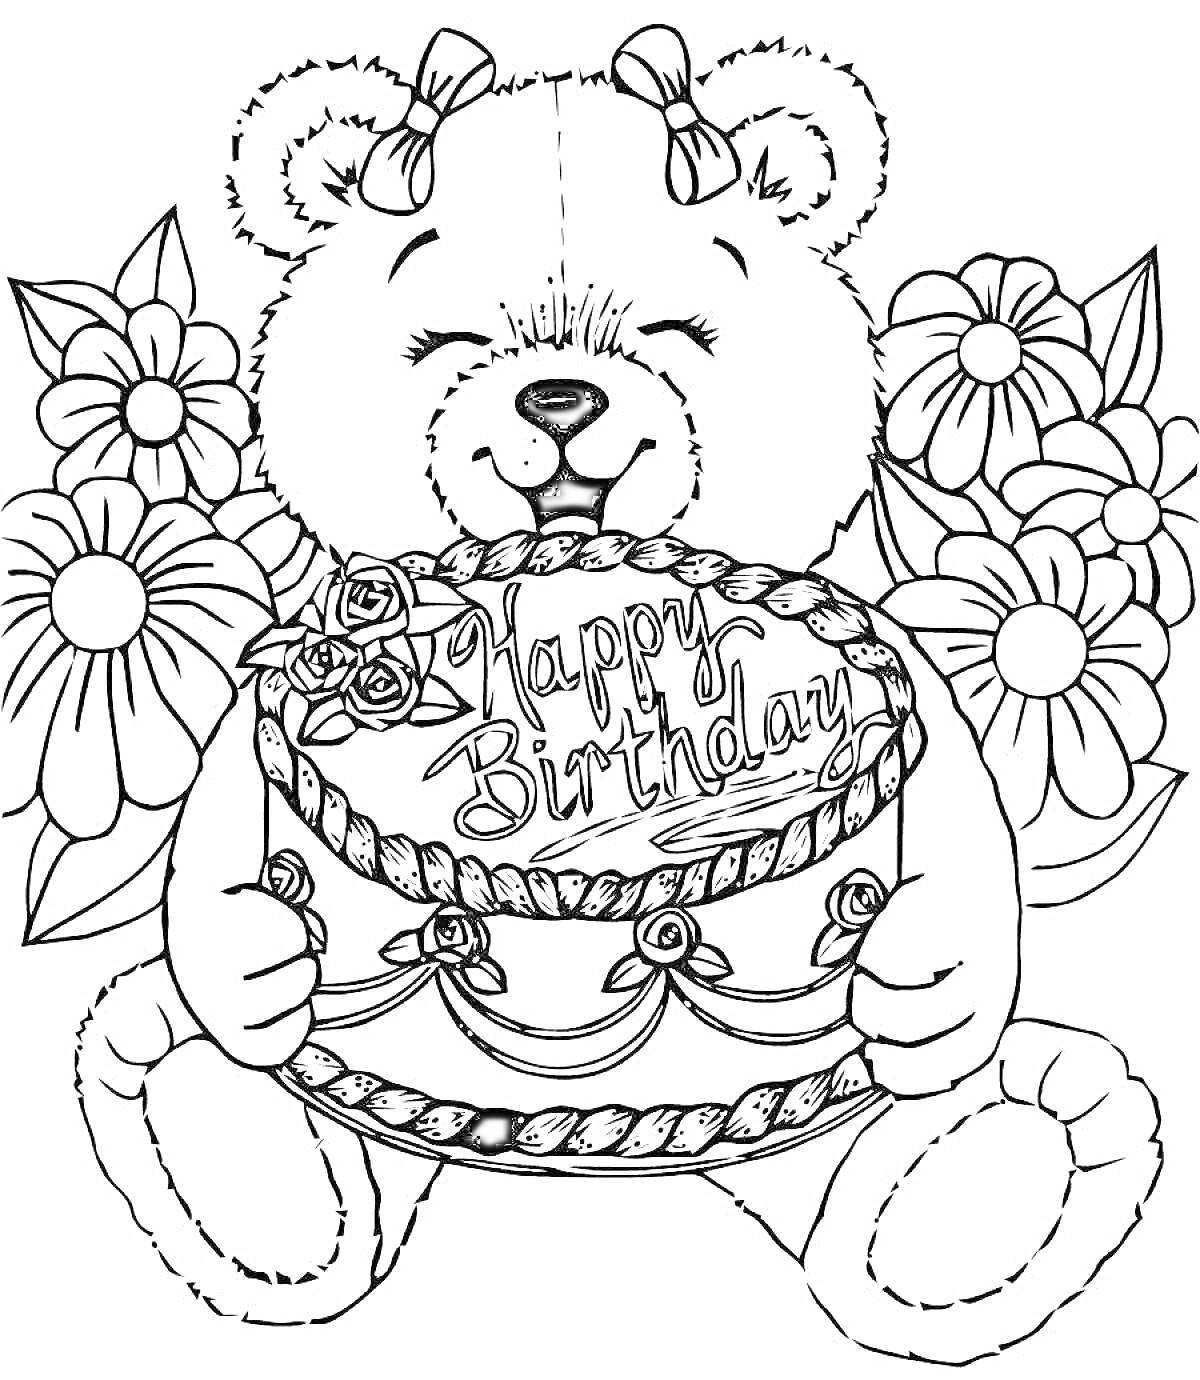 Медвежонок с бантиками и цветами, держащий торт с надписью 